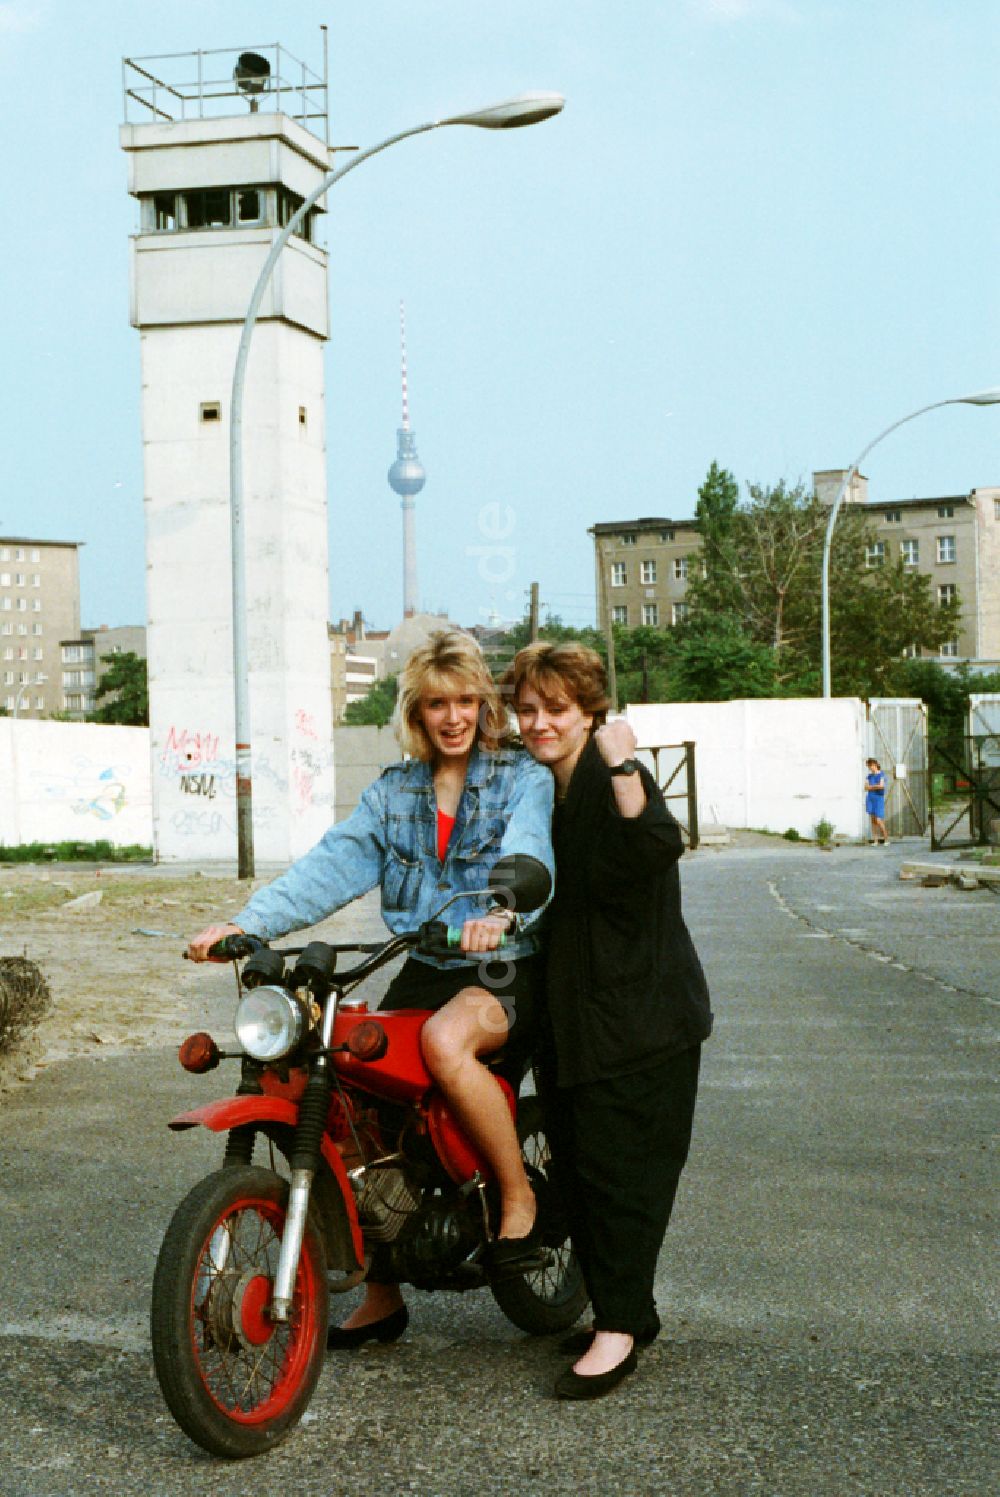 DDR-Fotoarchiv: Berlin - Moped vom Typ S50 mit jungen Frauen im ehemaligen Mauerstreifen an der Bernauer Straße in Berlin auf dem Gebiet der ehemaligen DDR, Deutsche Demokratische Republik